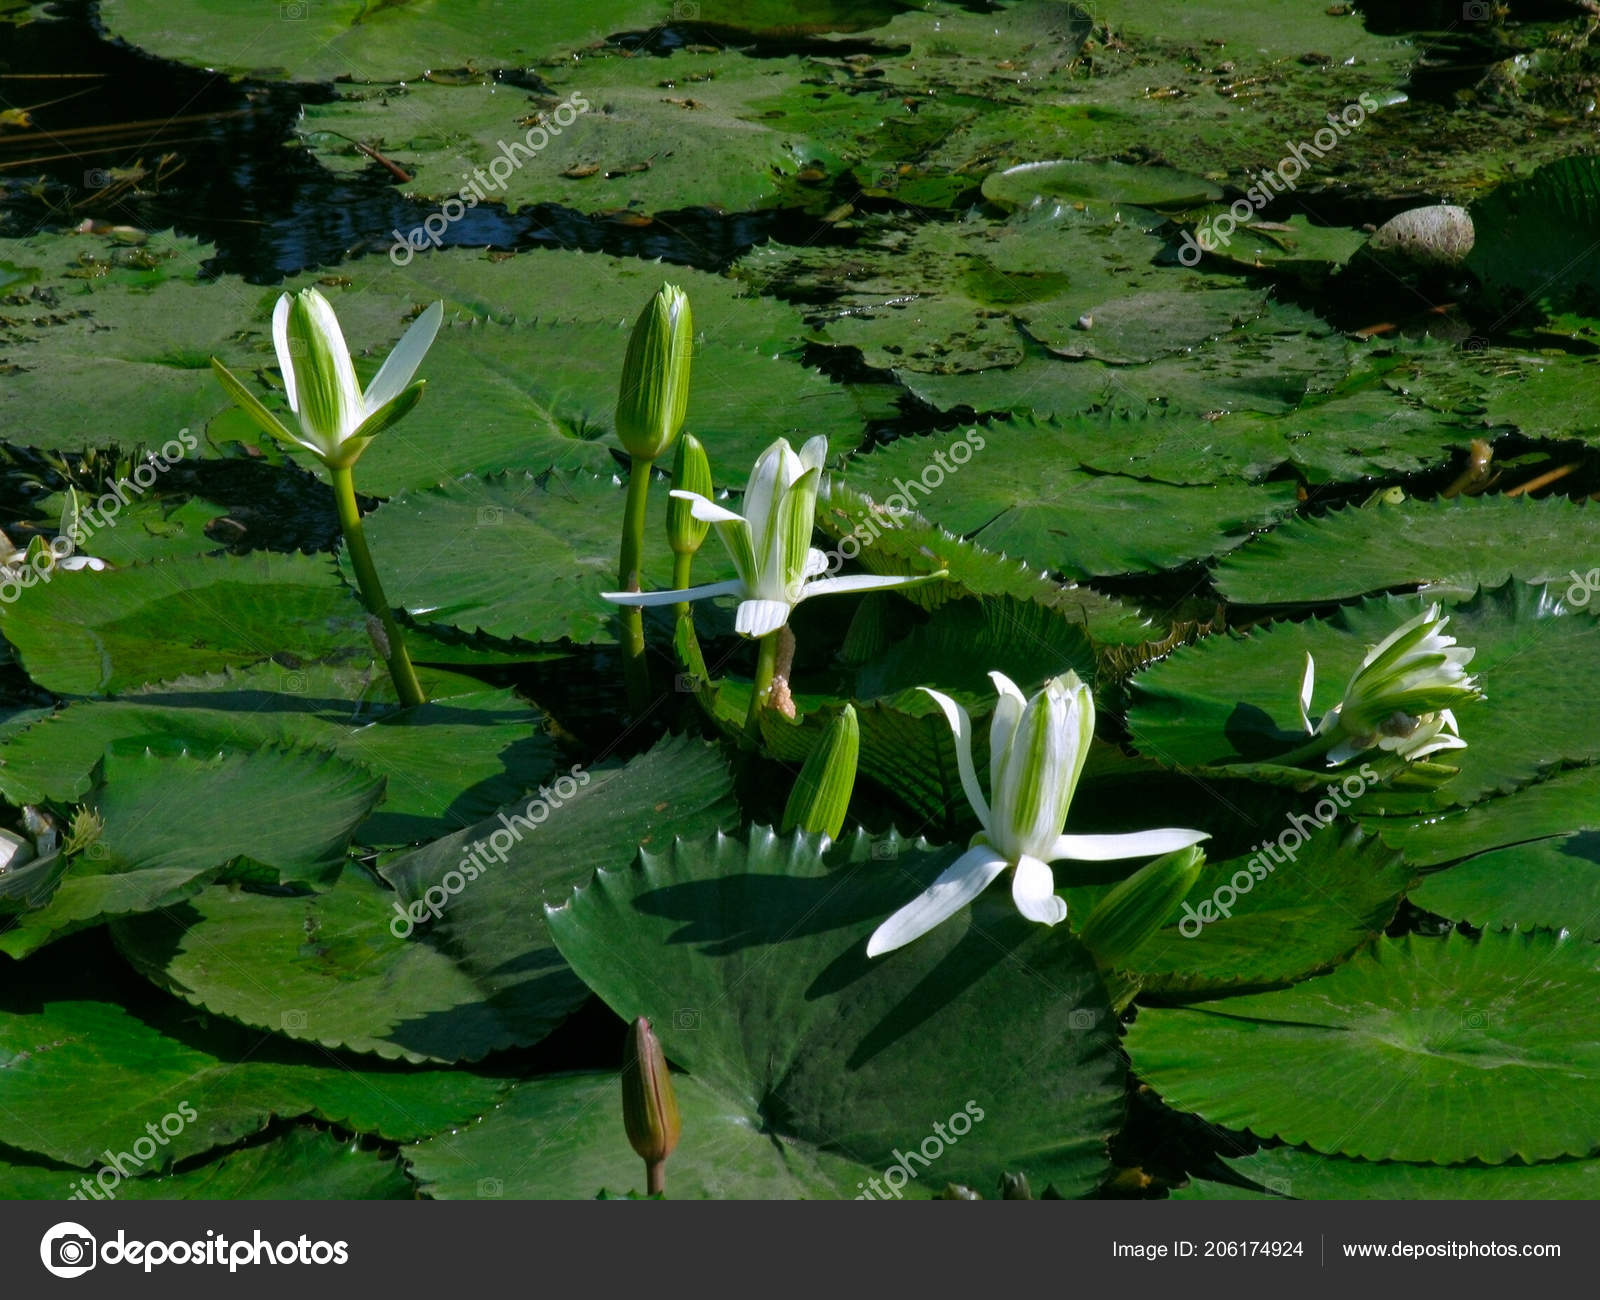 Nymphaea lotus (White Egyptian Lotus)